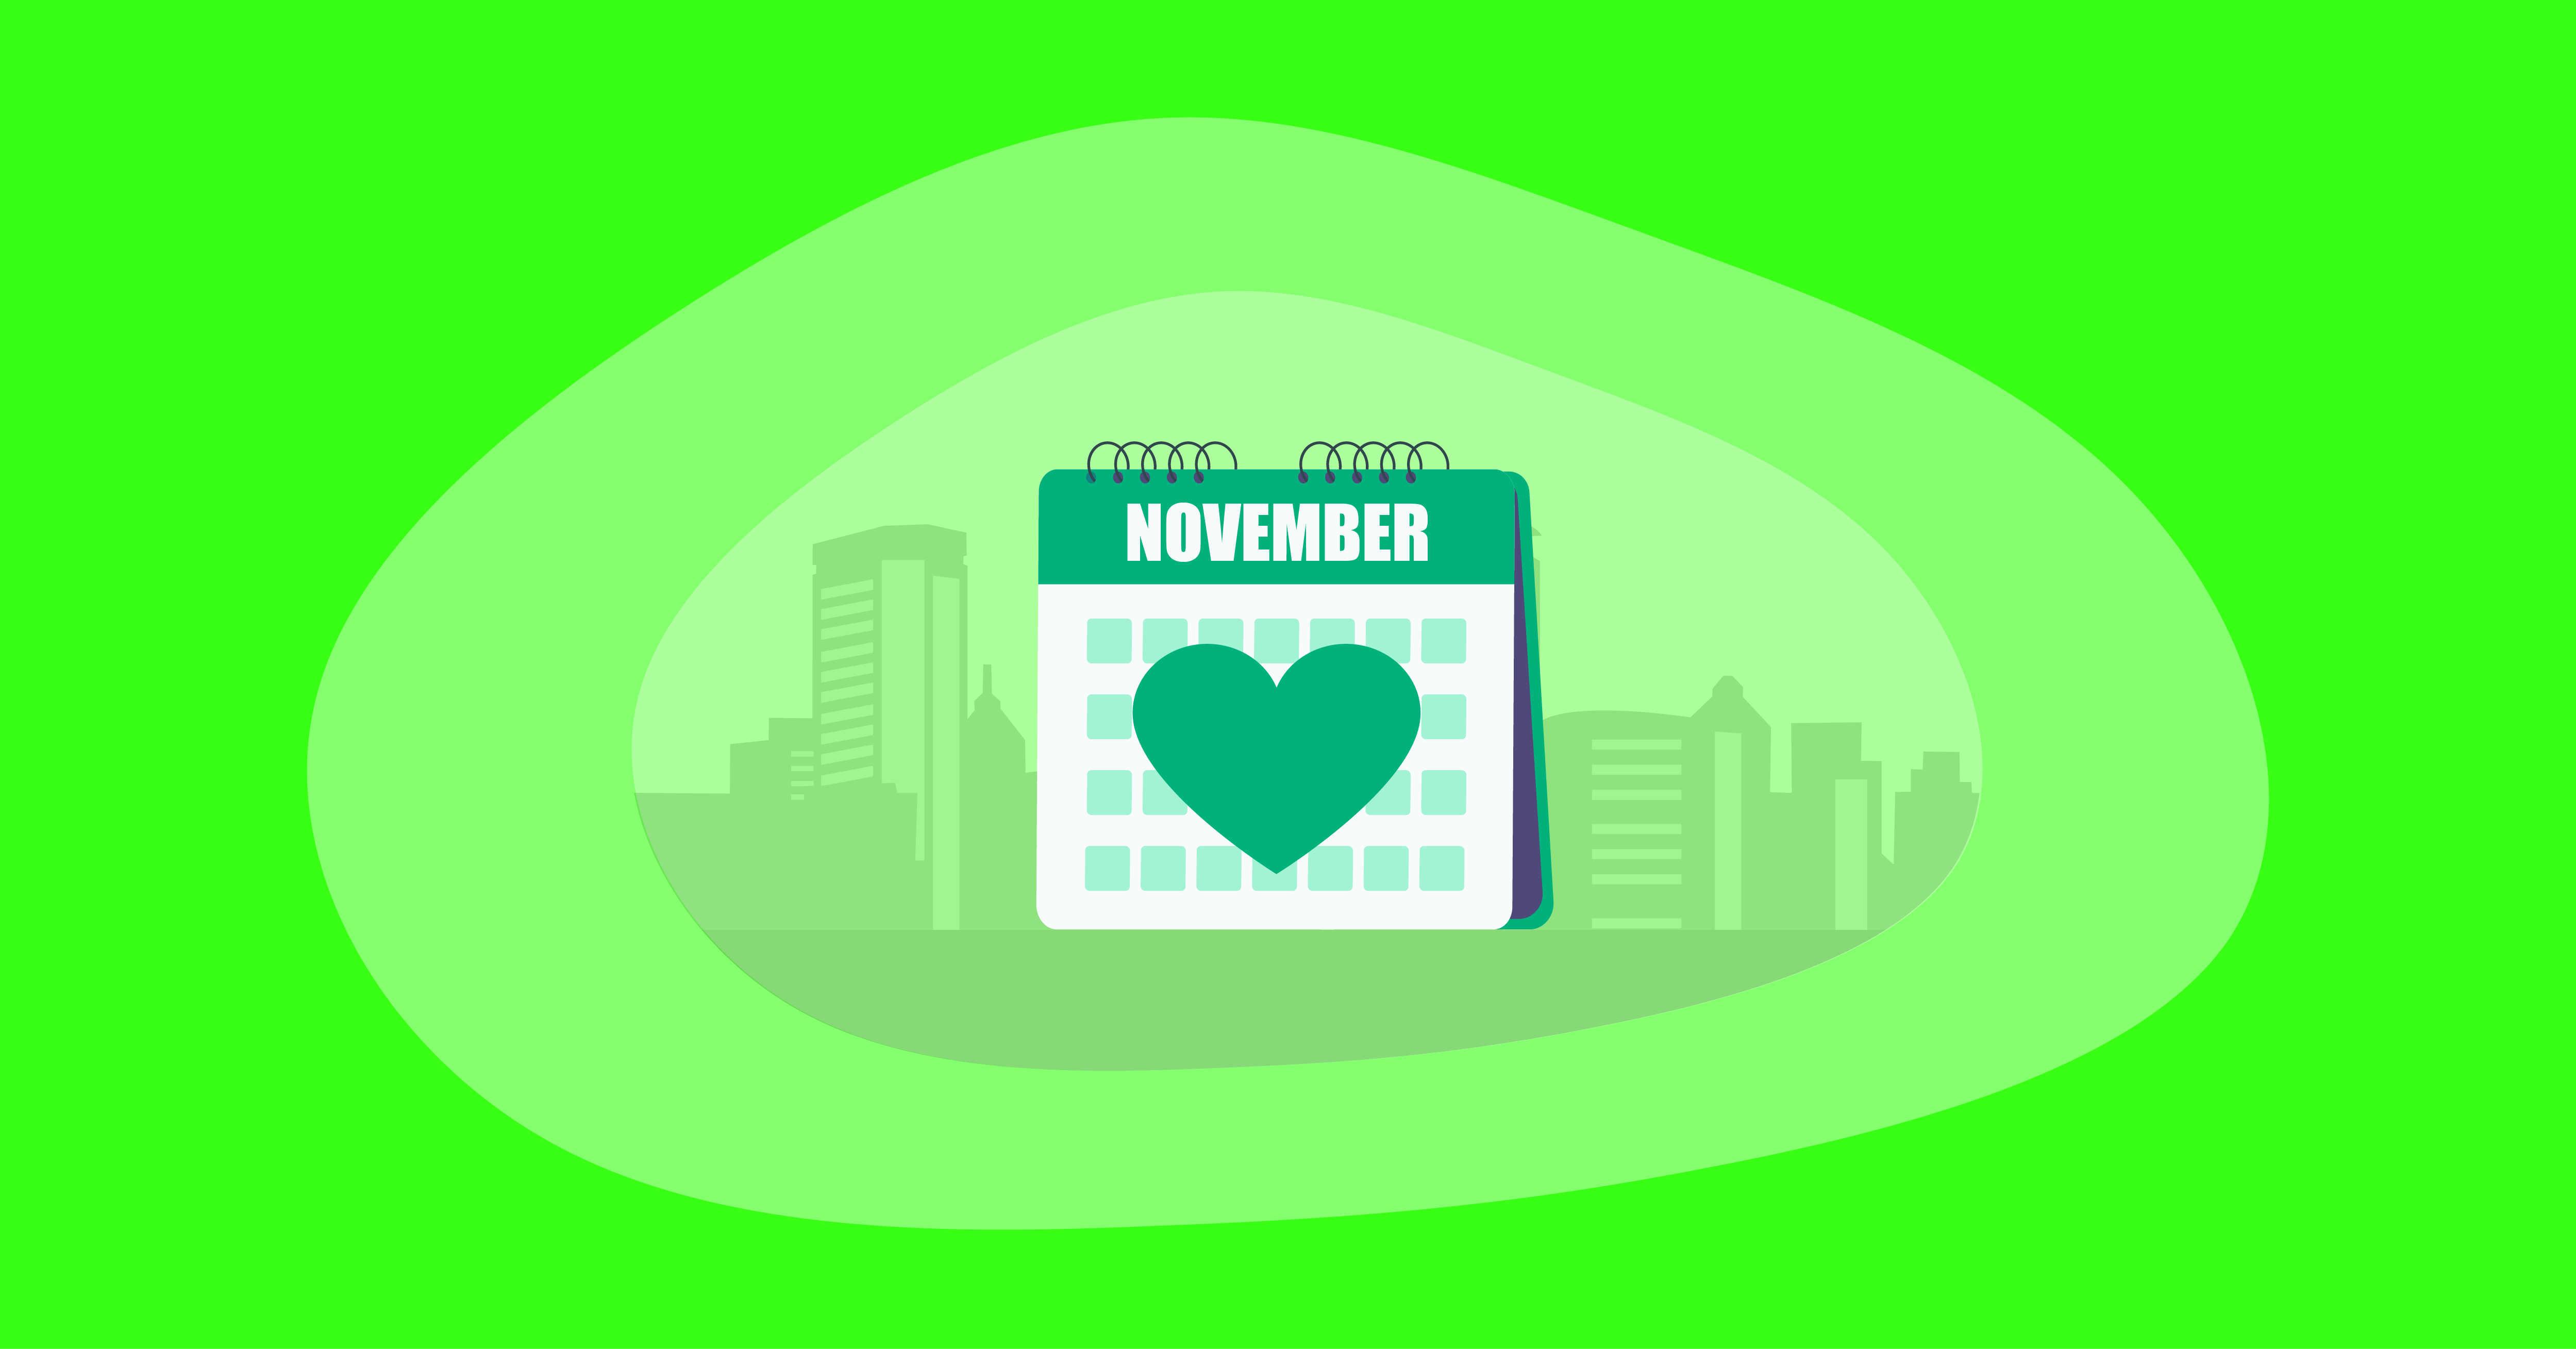 Illustration of an awareness calendar for November